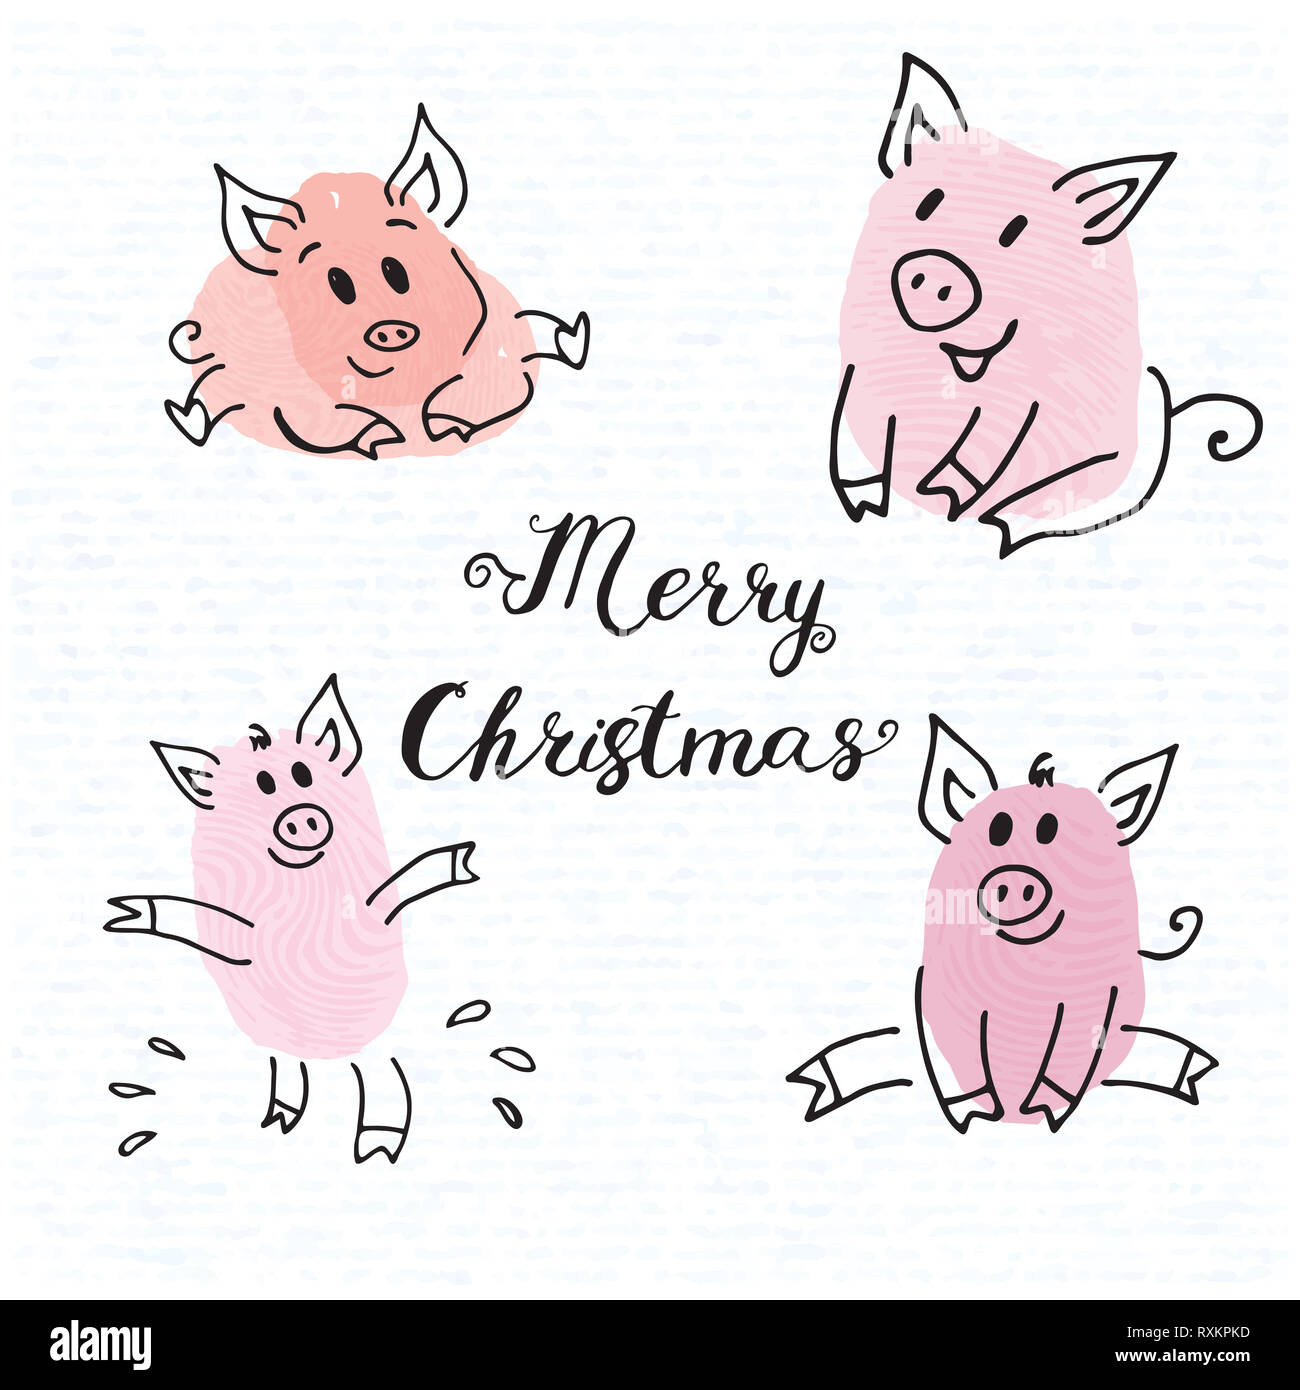 Disegni Di Natale Divertenti.Zodiaco Simbolo Del Nuovo Anno 2019 Piggy Pink Divertente Raccolta Di Impronte Digitali Disegni Di Suinetti Di Biglietti Di Auguri Di Natale Di 2019 Caratteri Foto Stock Alamy